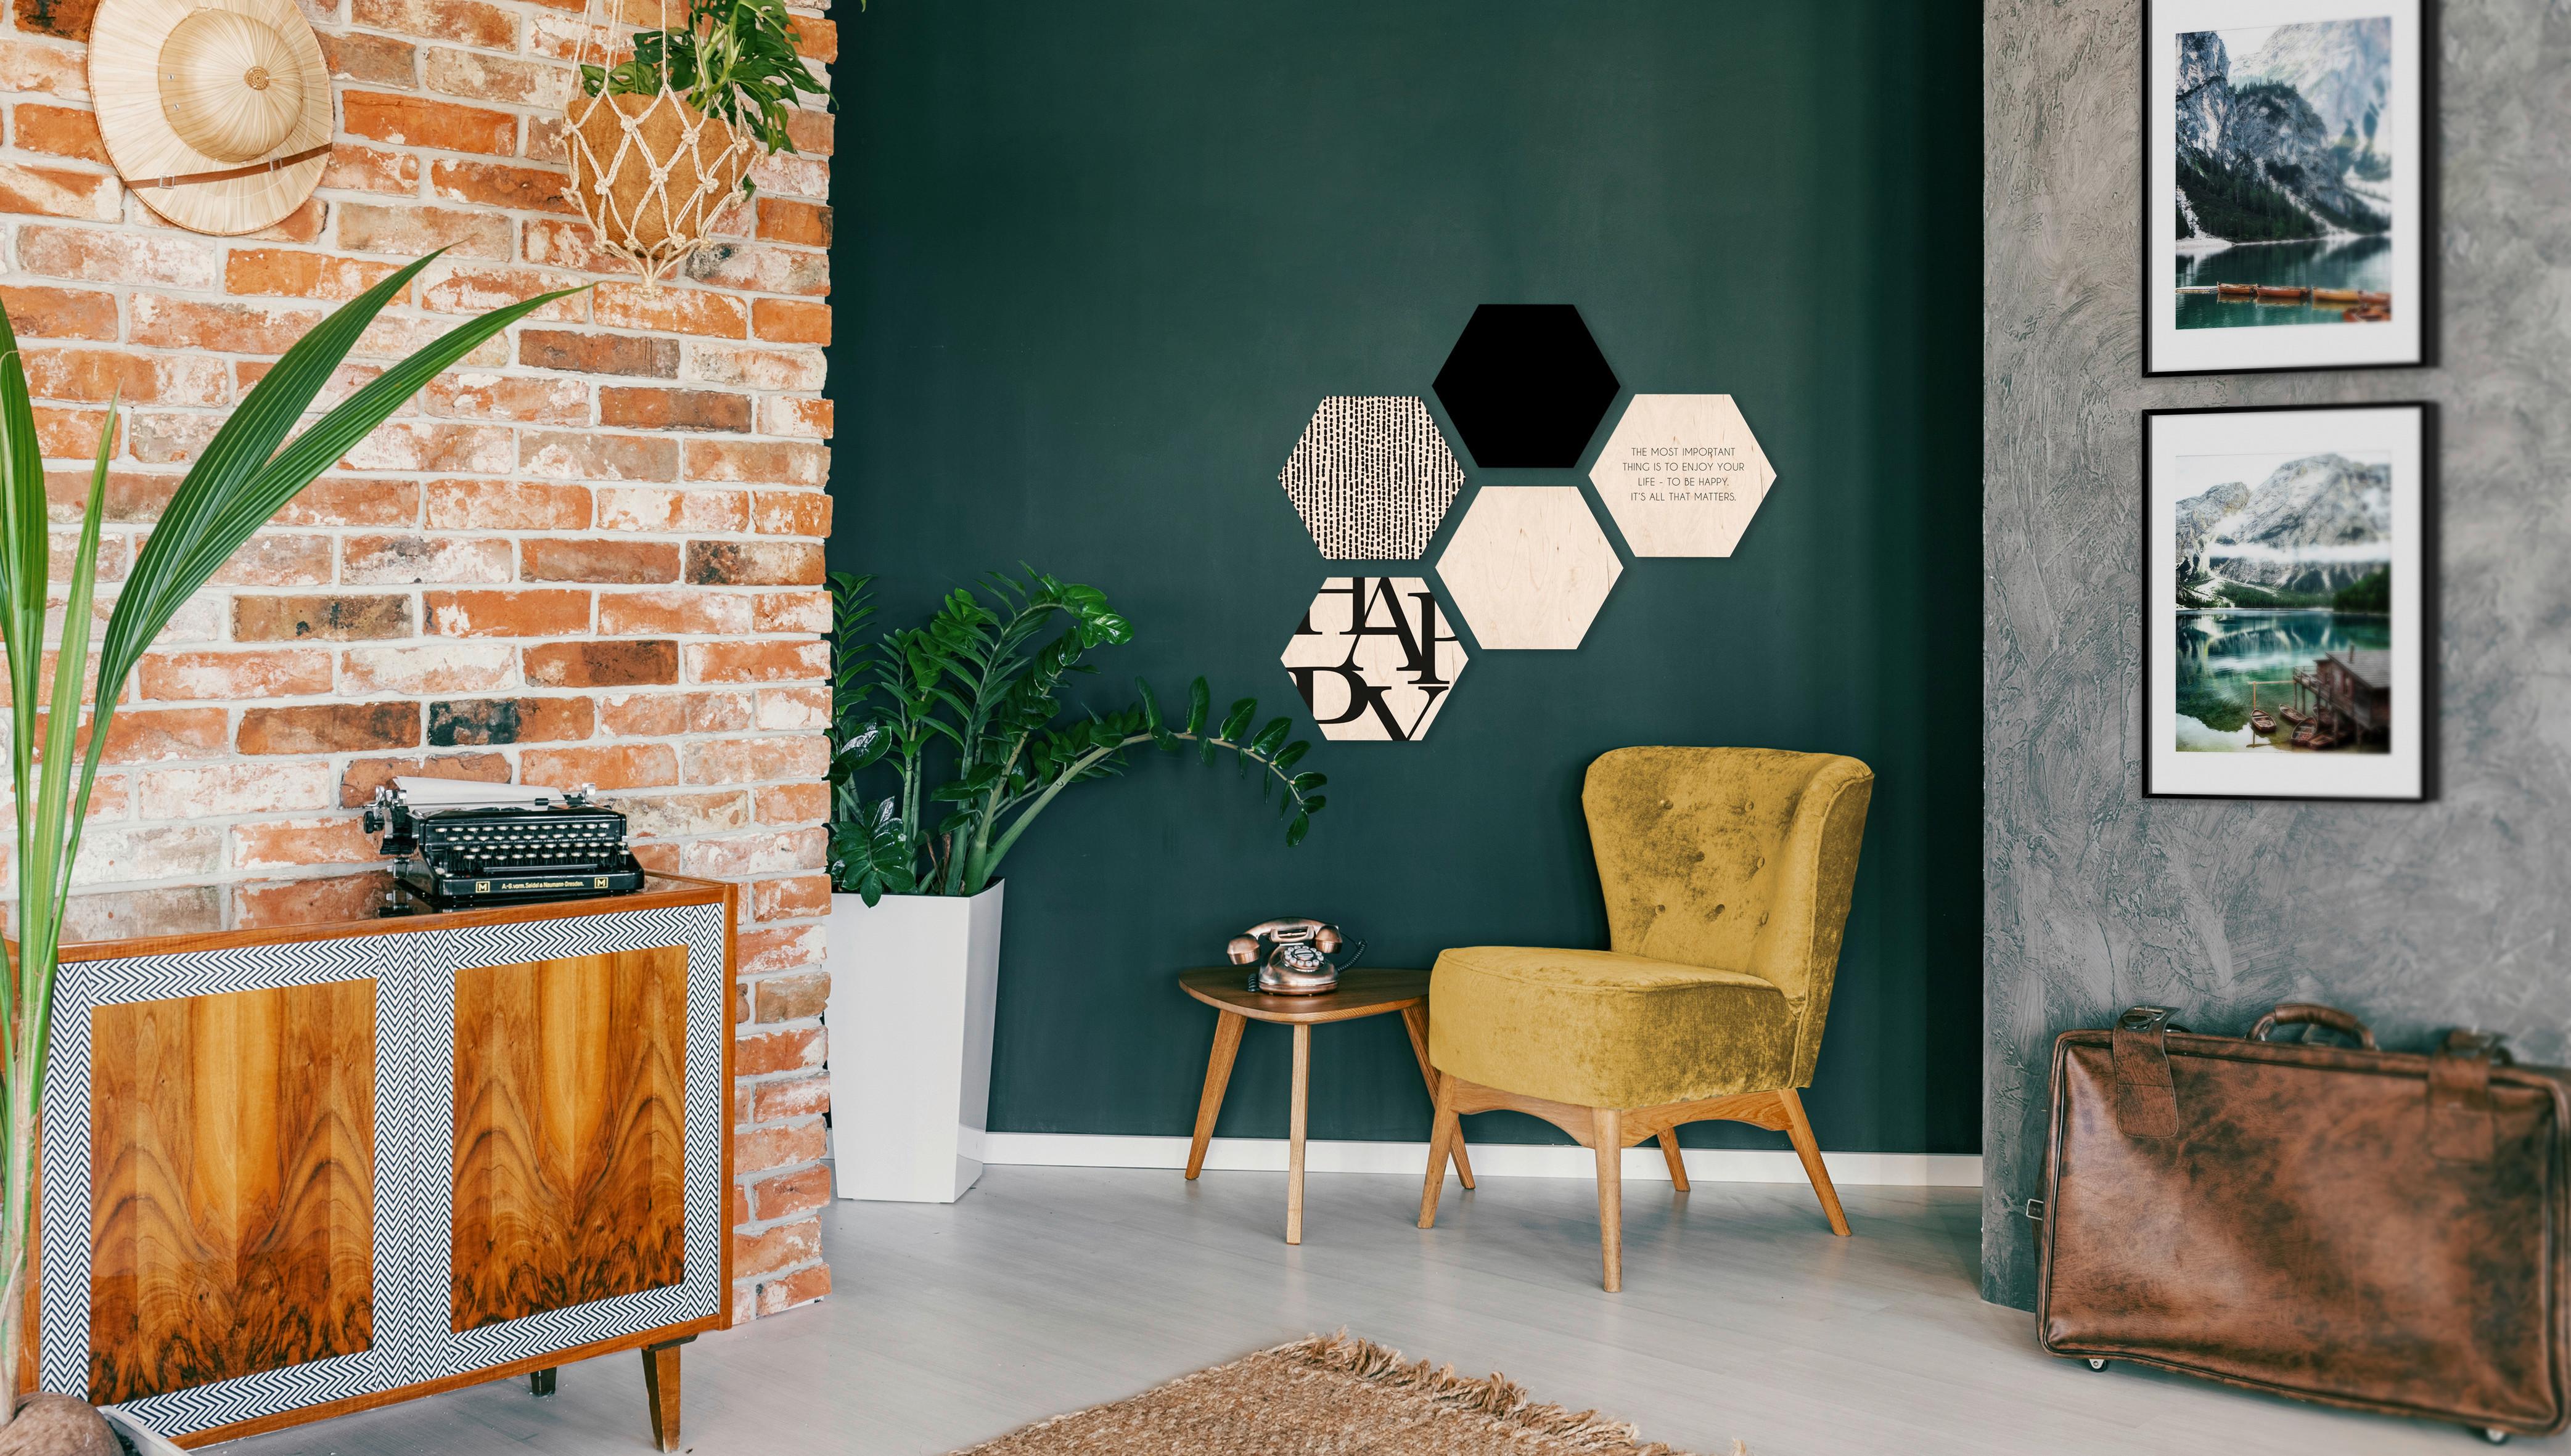 Obraz Hexagon, 5dílná Sada - bílá/černá, dřevo (30/25cm) - Modern Living